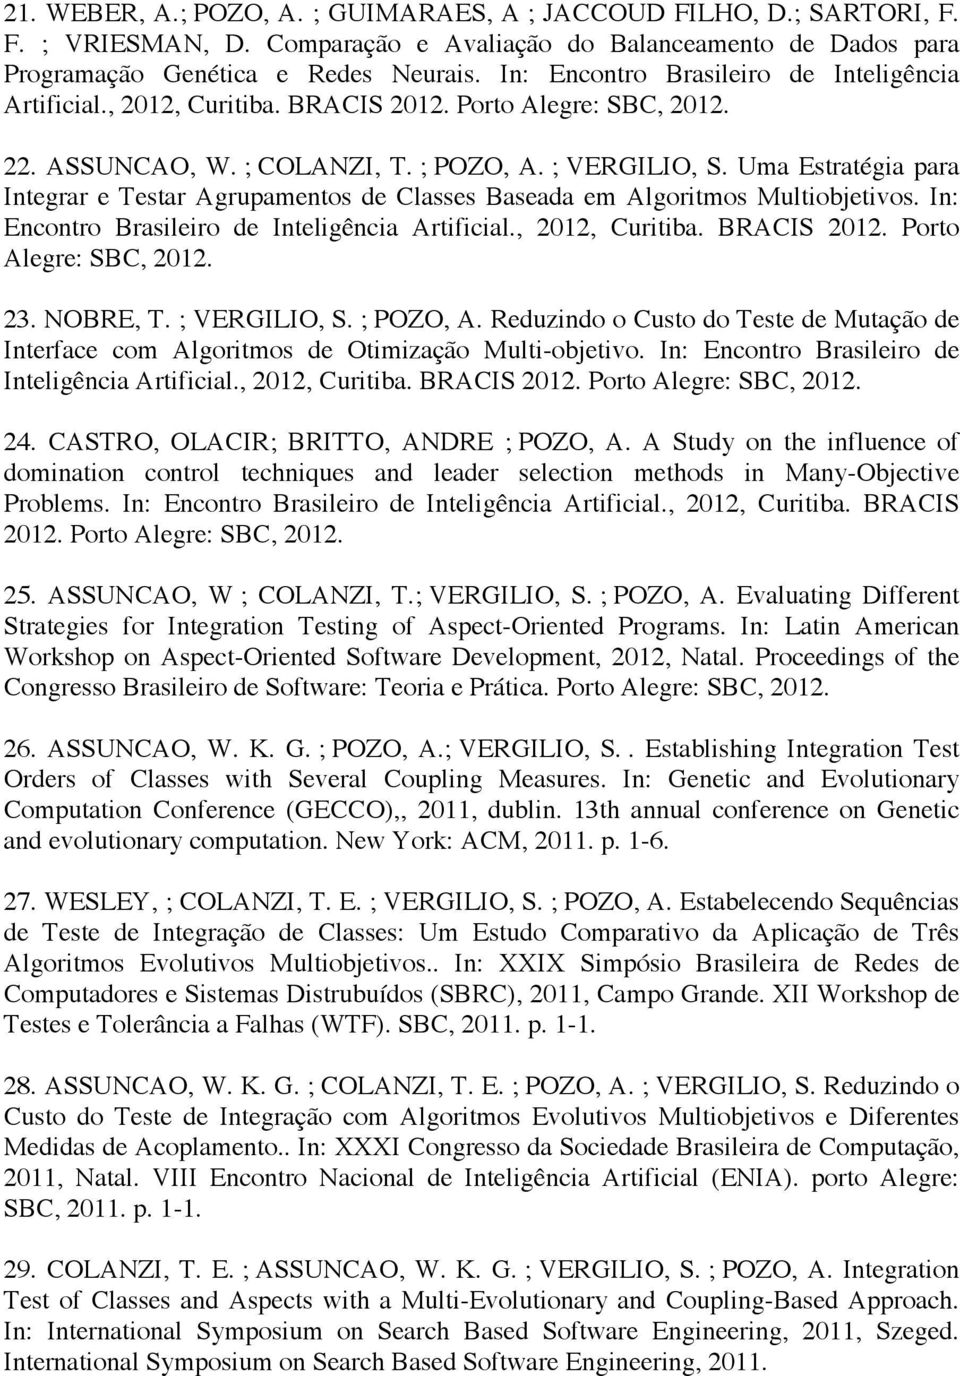 Uma Estratégia para Integrar e Testar Agrupamentos de Classes Baseada em Algoritmos Multiobjetivos. In: Encontro Brasileiro de Inteligência Artificial., 2012, Curitiba. BRACIS 2012.